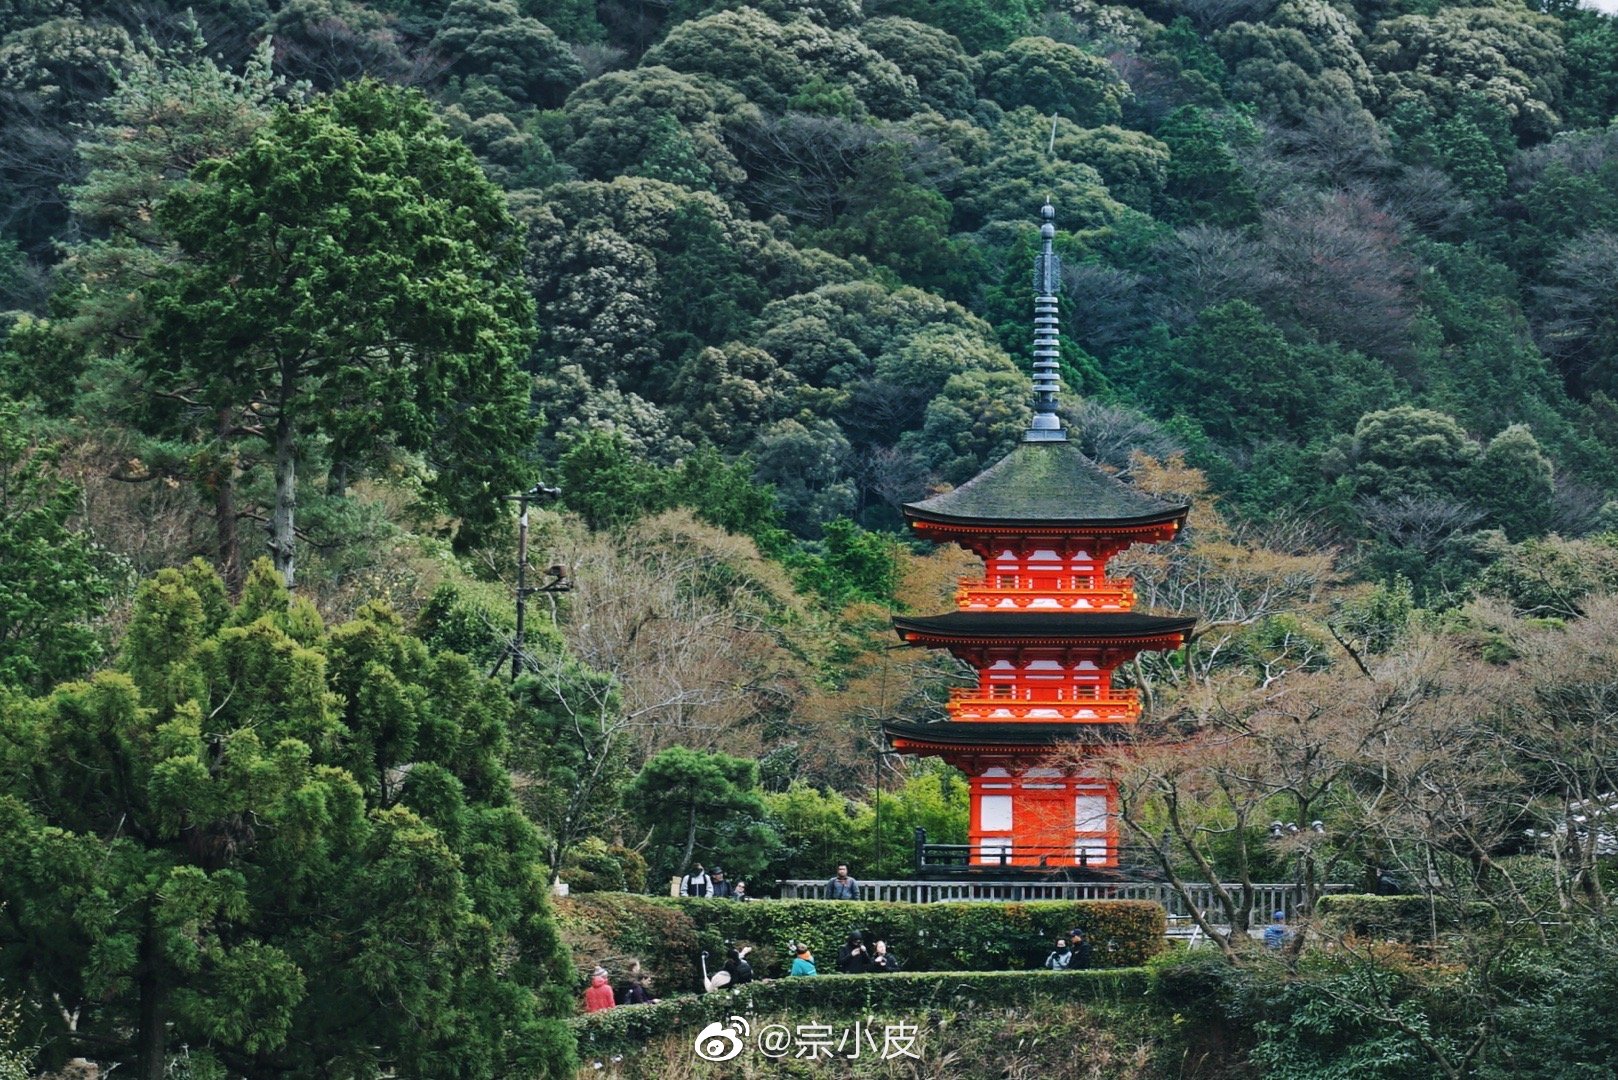 清水寺 来京都旅游都会来这里吧 清水寺是世界文化遗产 高清图集 新浪网